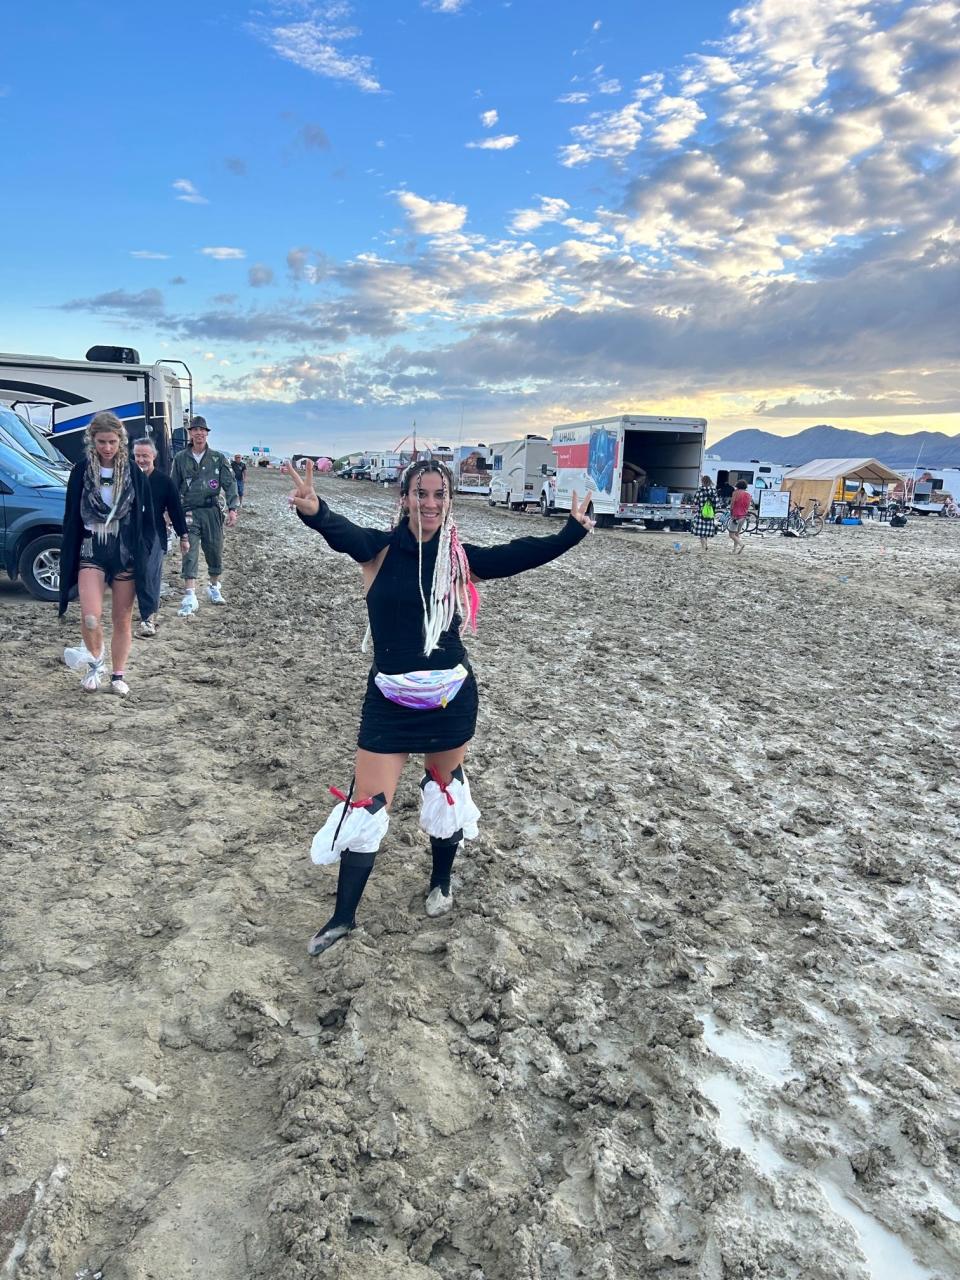 Anneta during storm at Burning Man